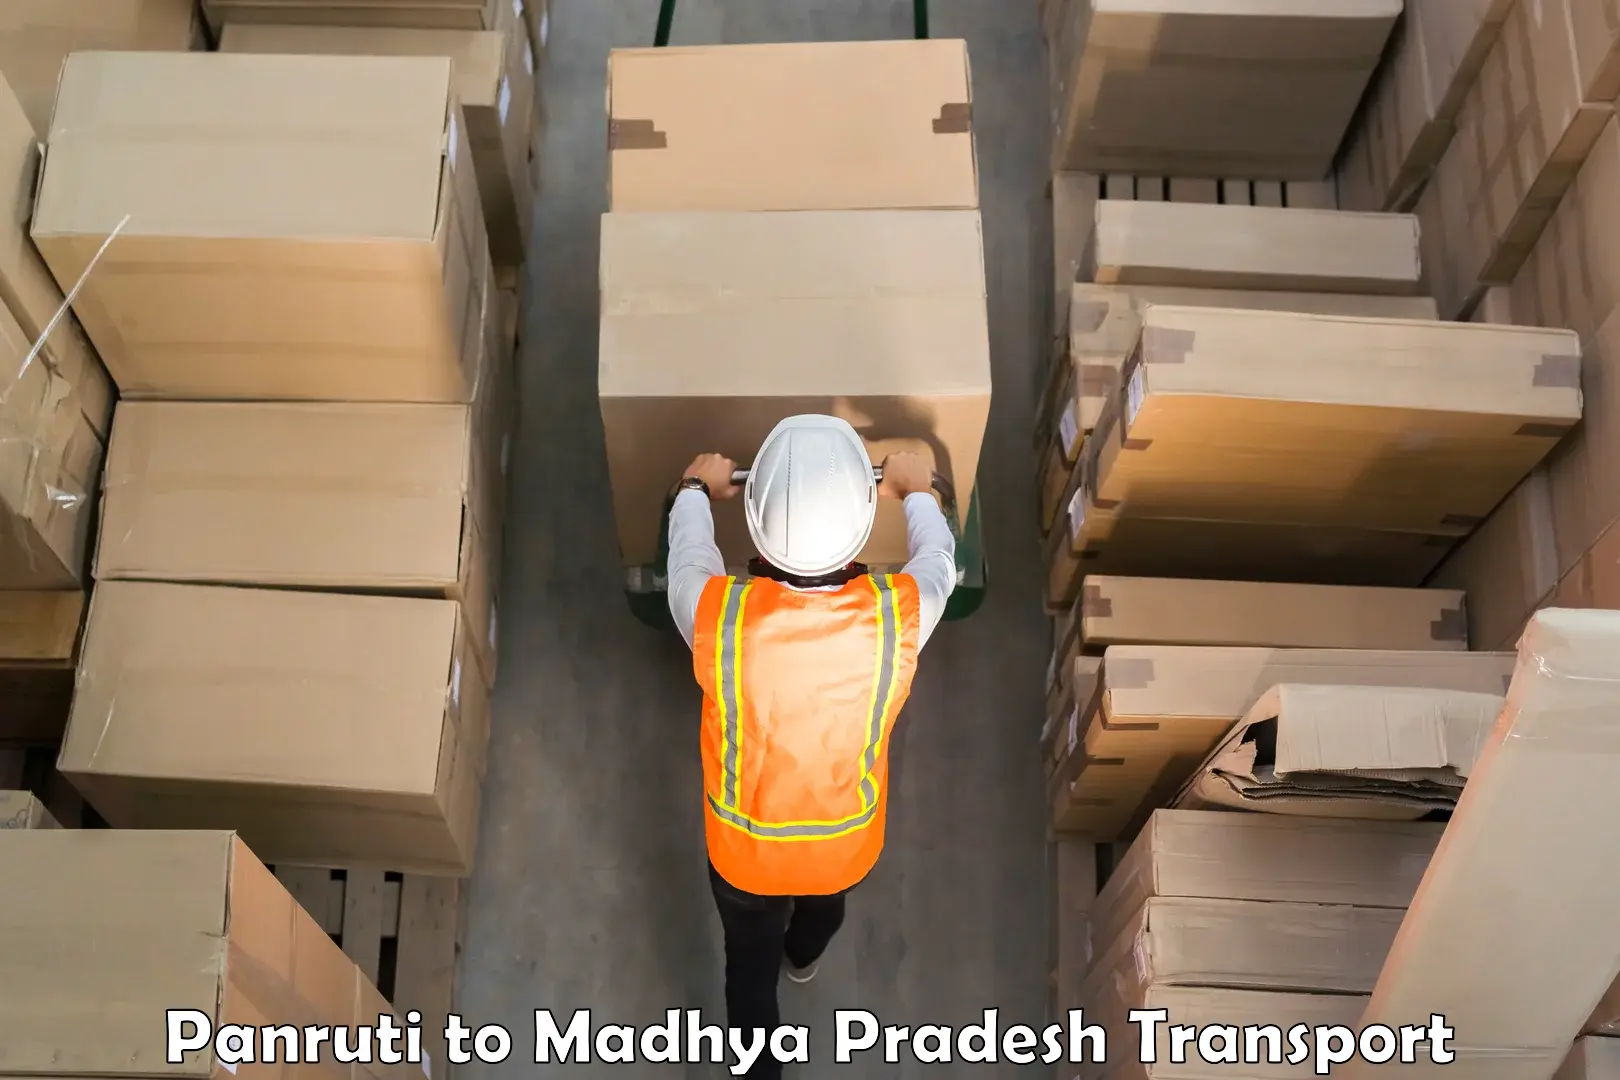 Furniture transport service Panruti to Madhya Pradesh